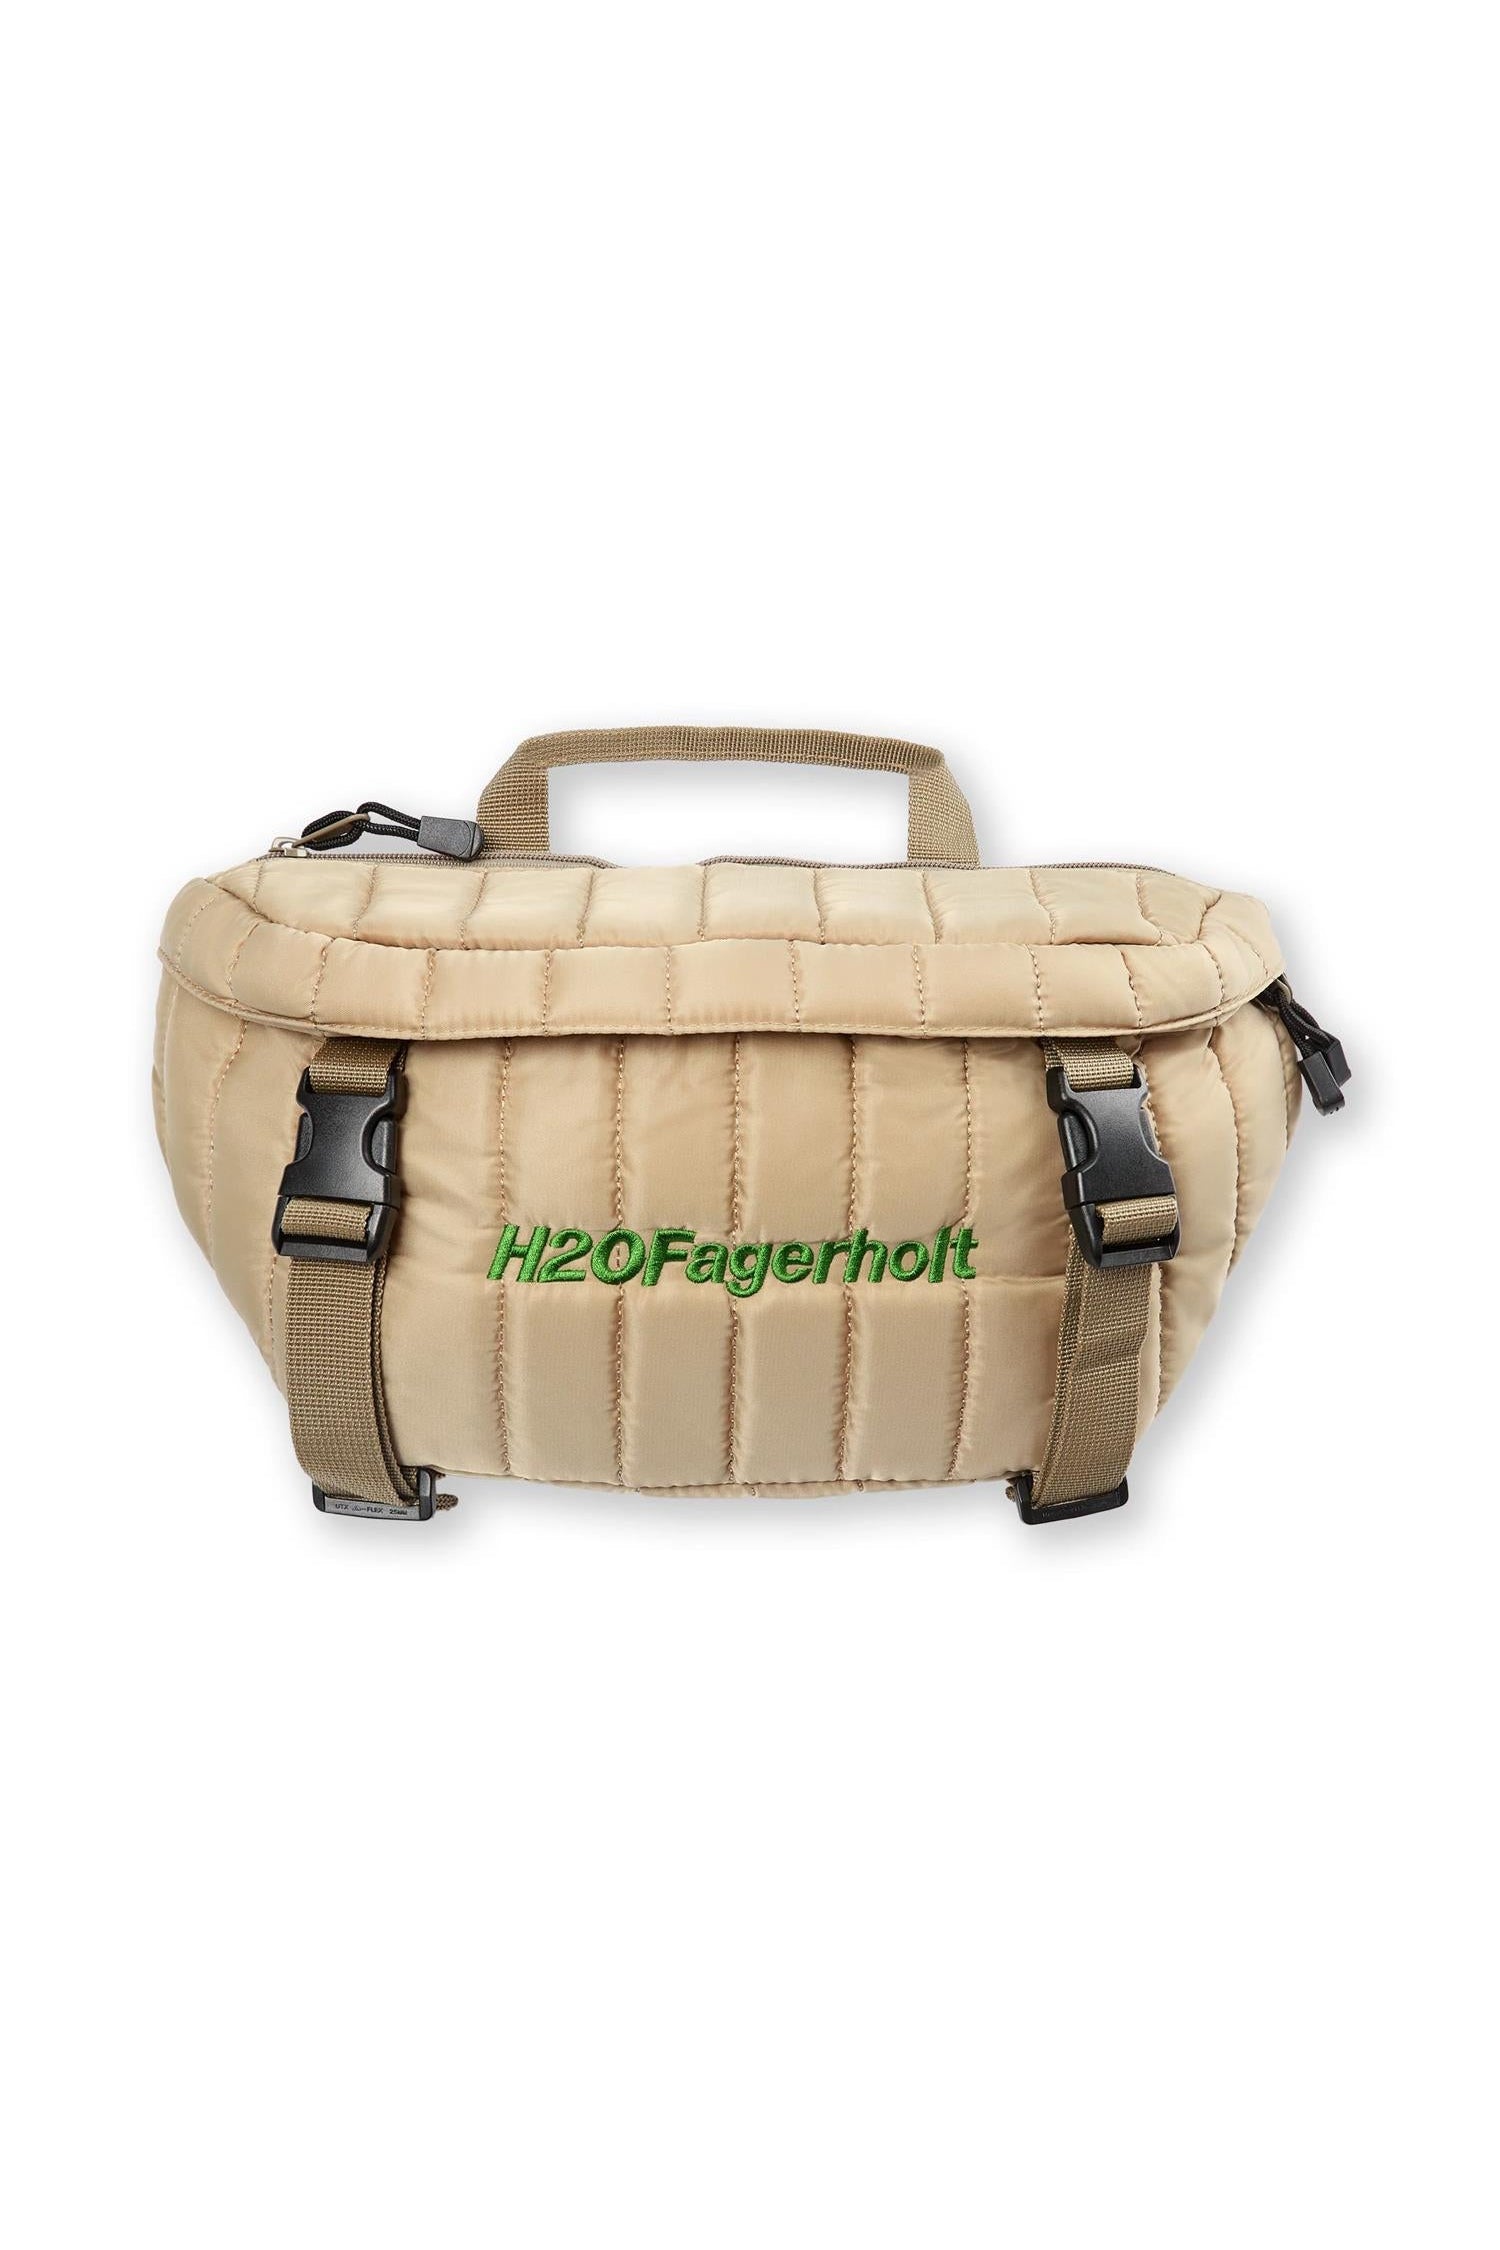 Tactical Tailor First Responder Bag Multicam